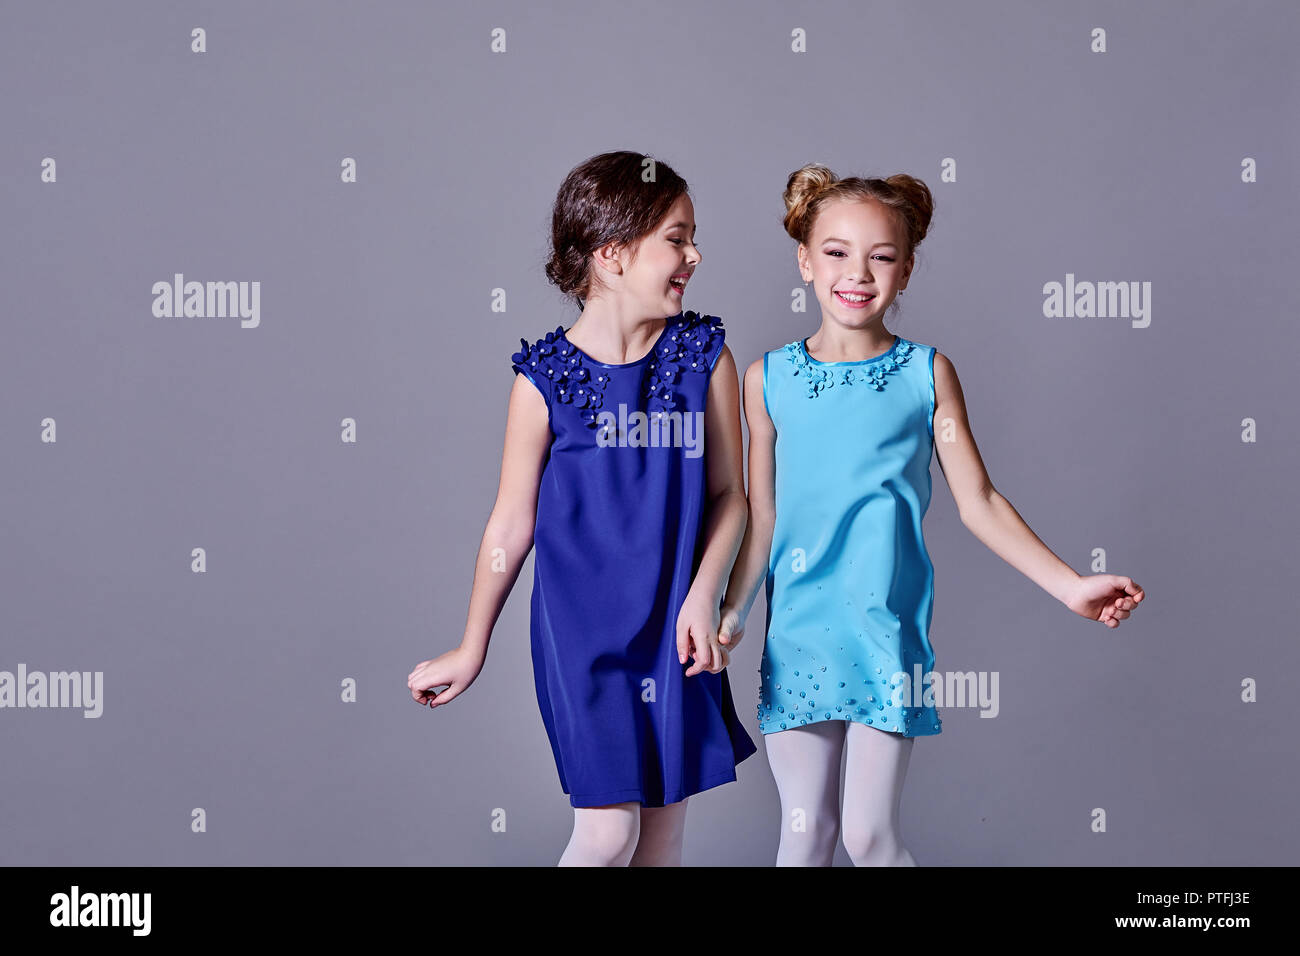 Zwei kleine Mädchen Spaß in schöne elegante Kleider. Freundinnen fashion  model Kinder lächeln posing Studio für Katalog Designer Kleidung. Classic  Lady Style für Kids, Teens und Kopieren Stockfotografie - Alamy